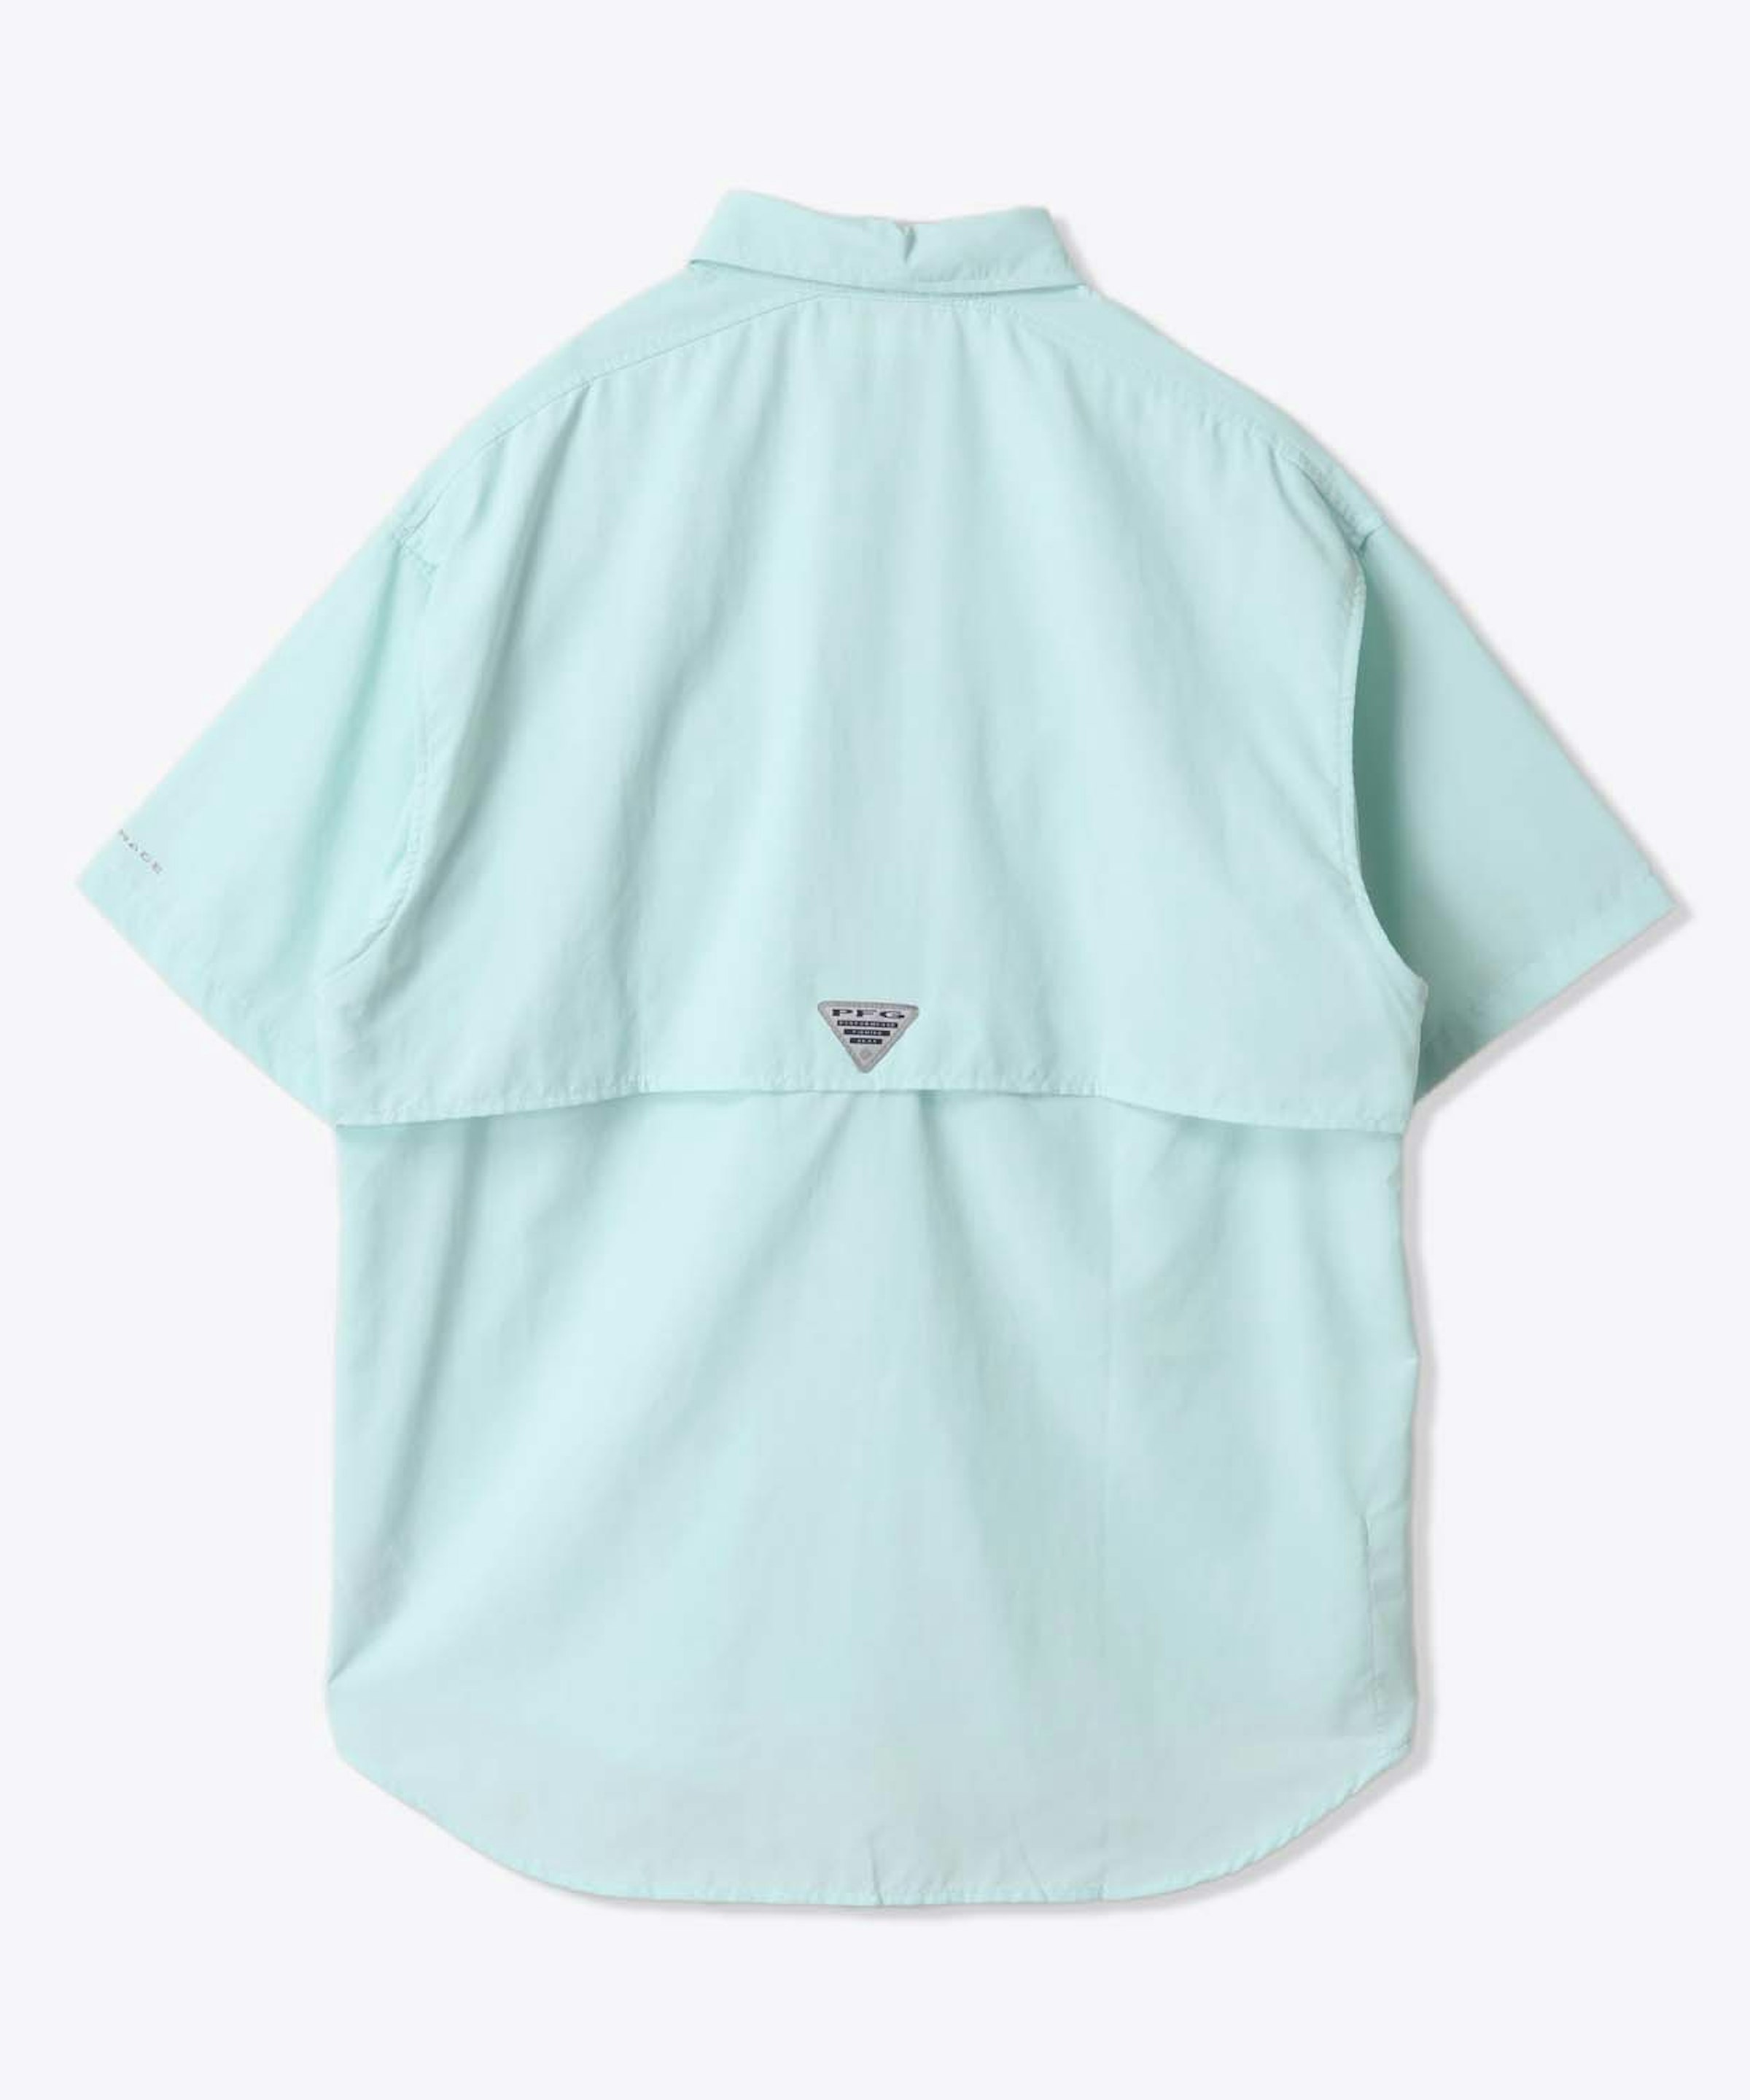 Bahama™ II S/S Shirt – 6,490 yen (tax incl.)